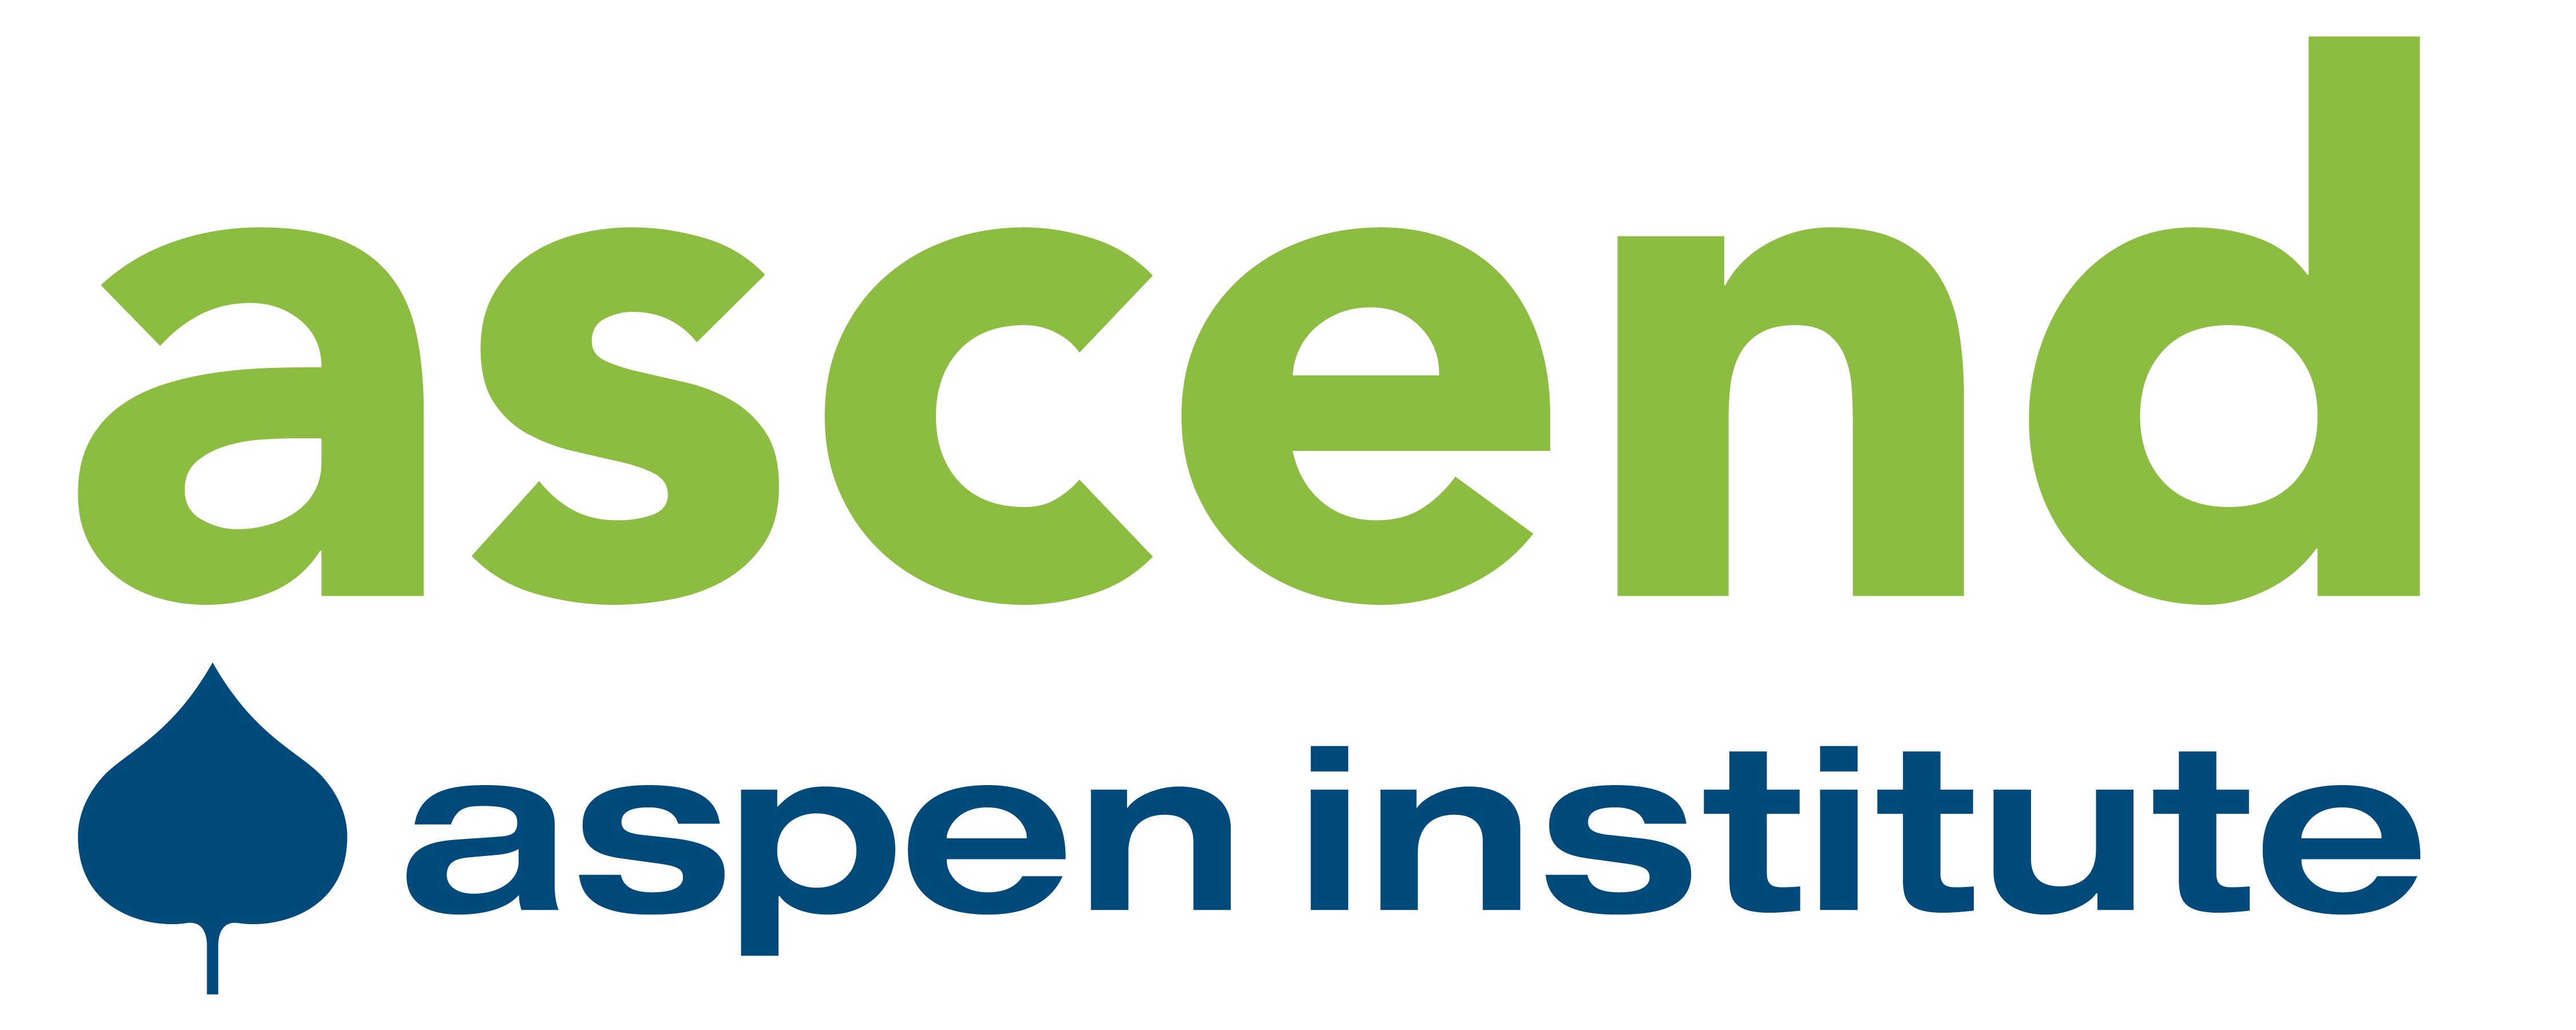 ascend aspen institute logo